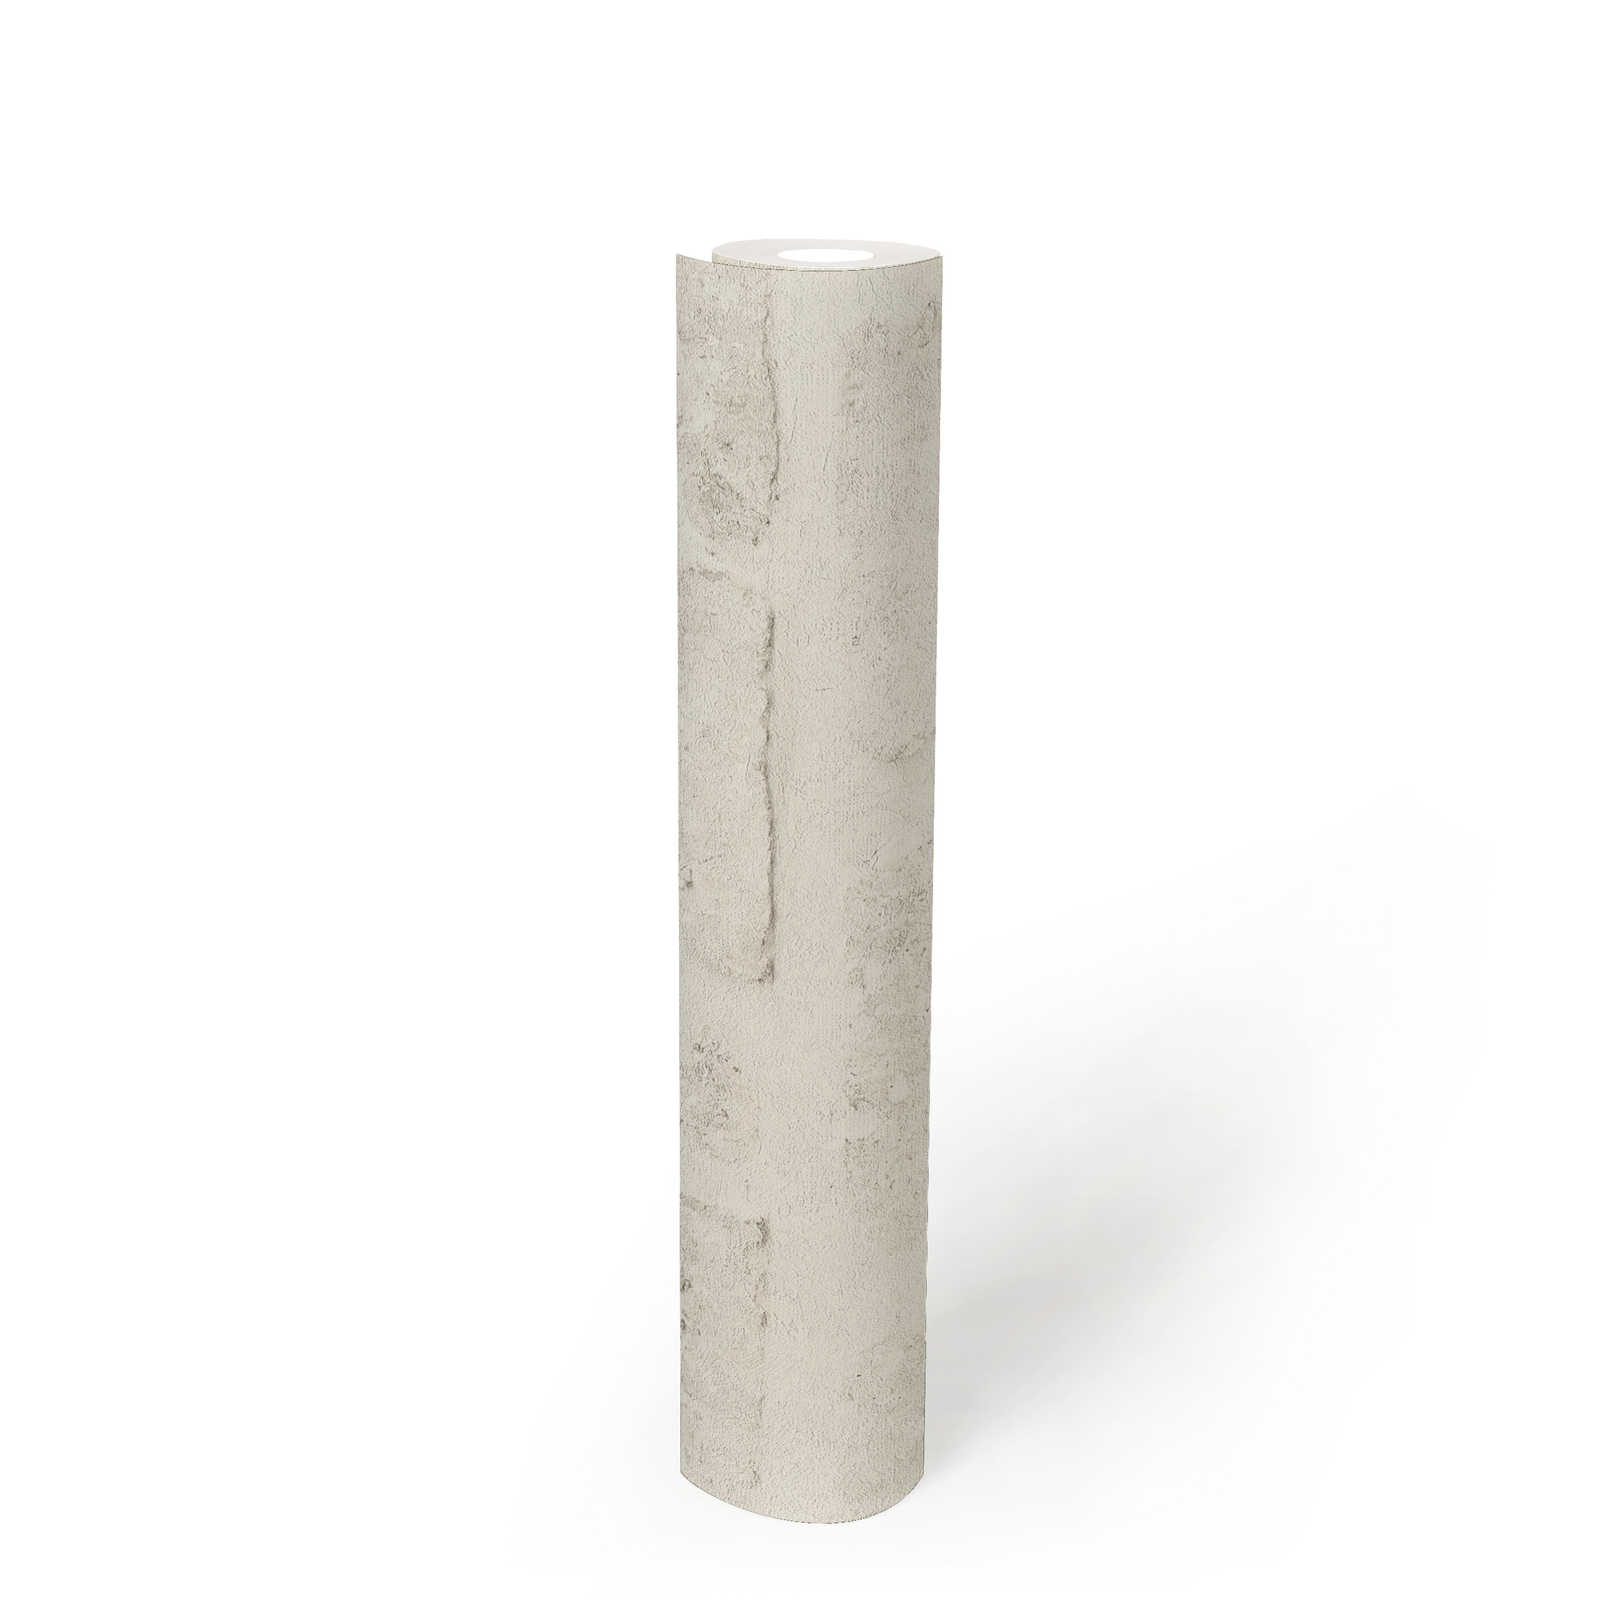             Carta da parati in stile industriale con effetto pietra e motivo a parete - grigio, bianco
        